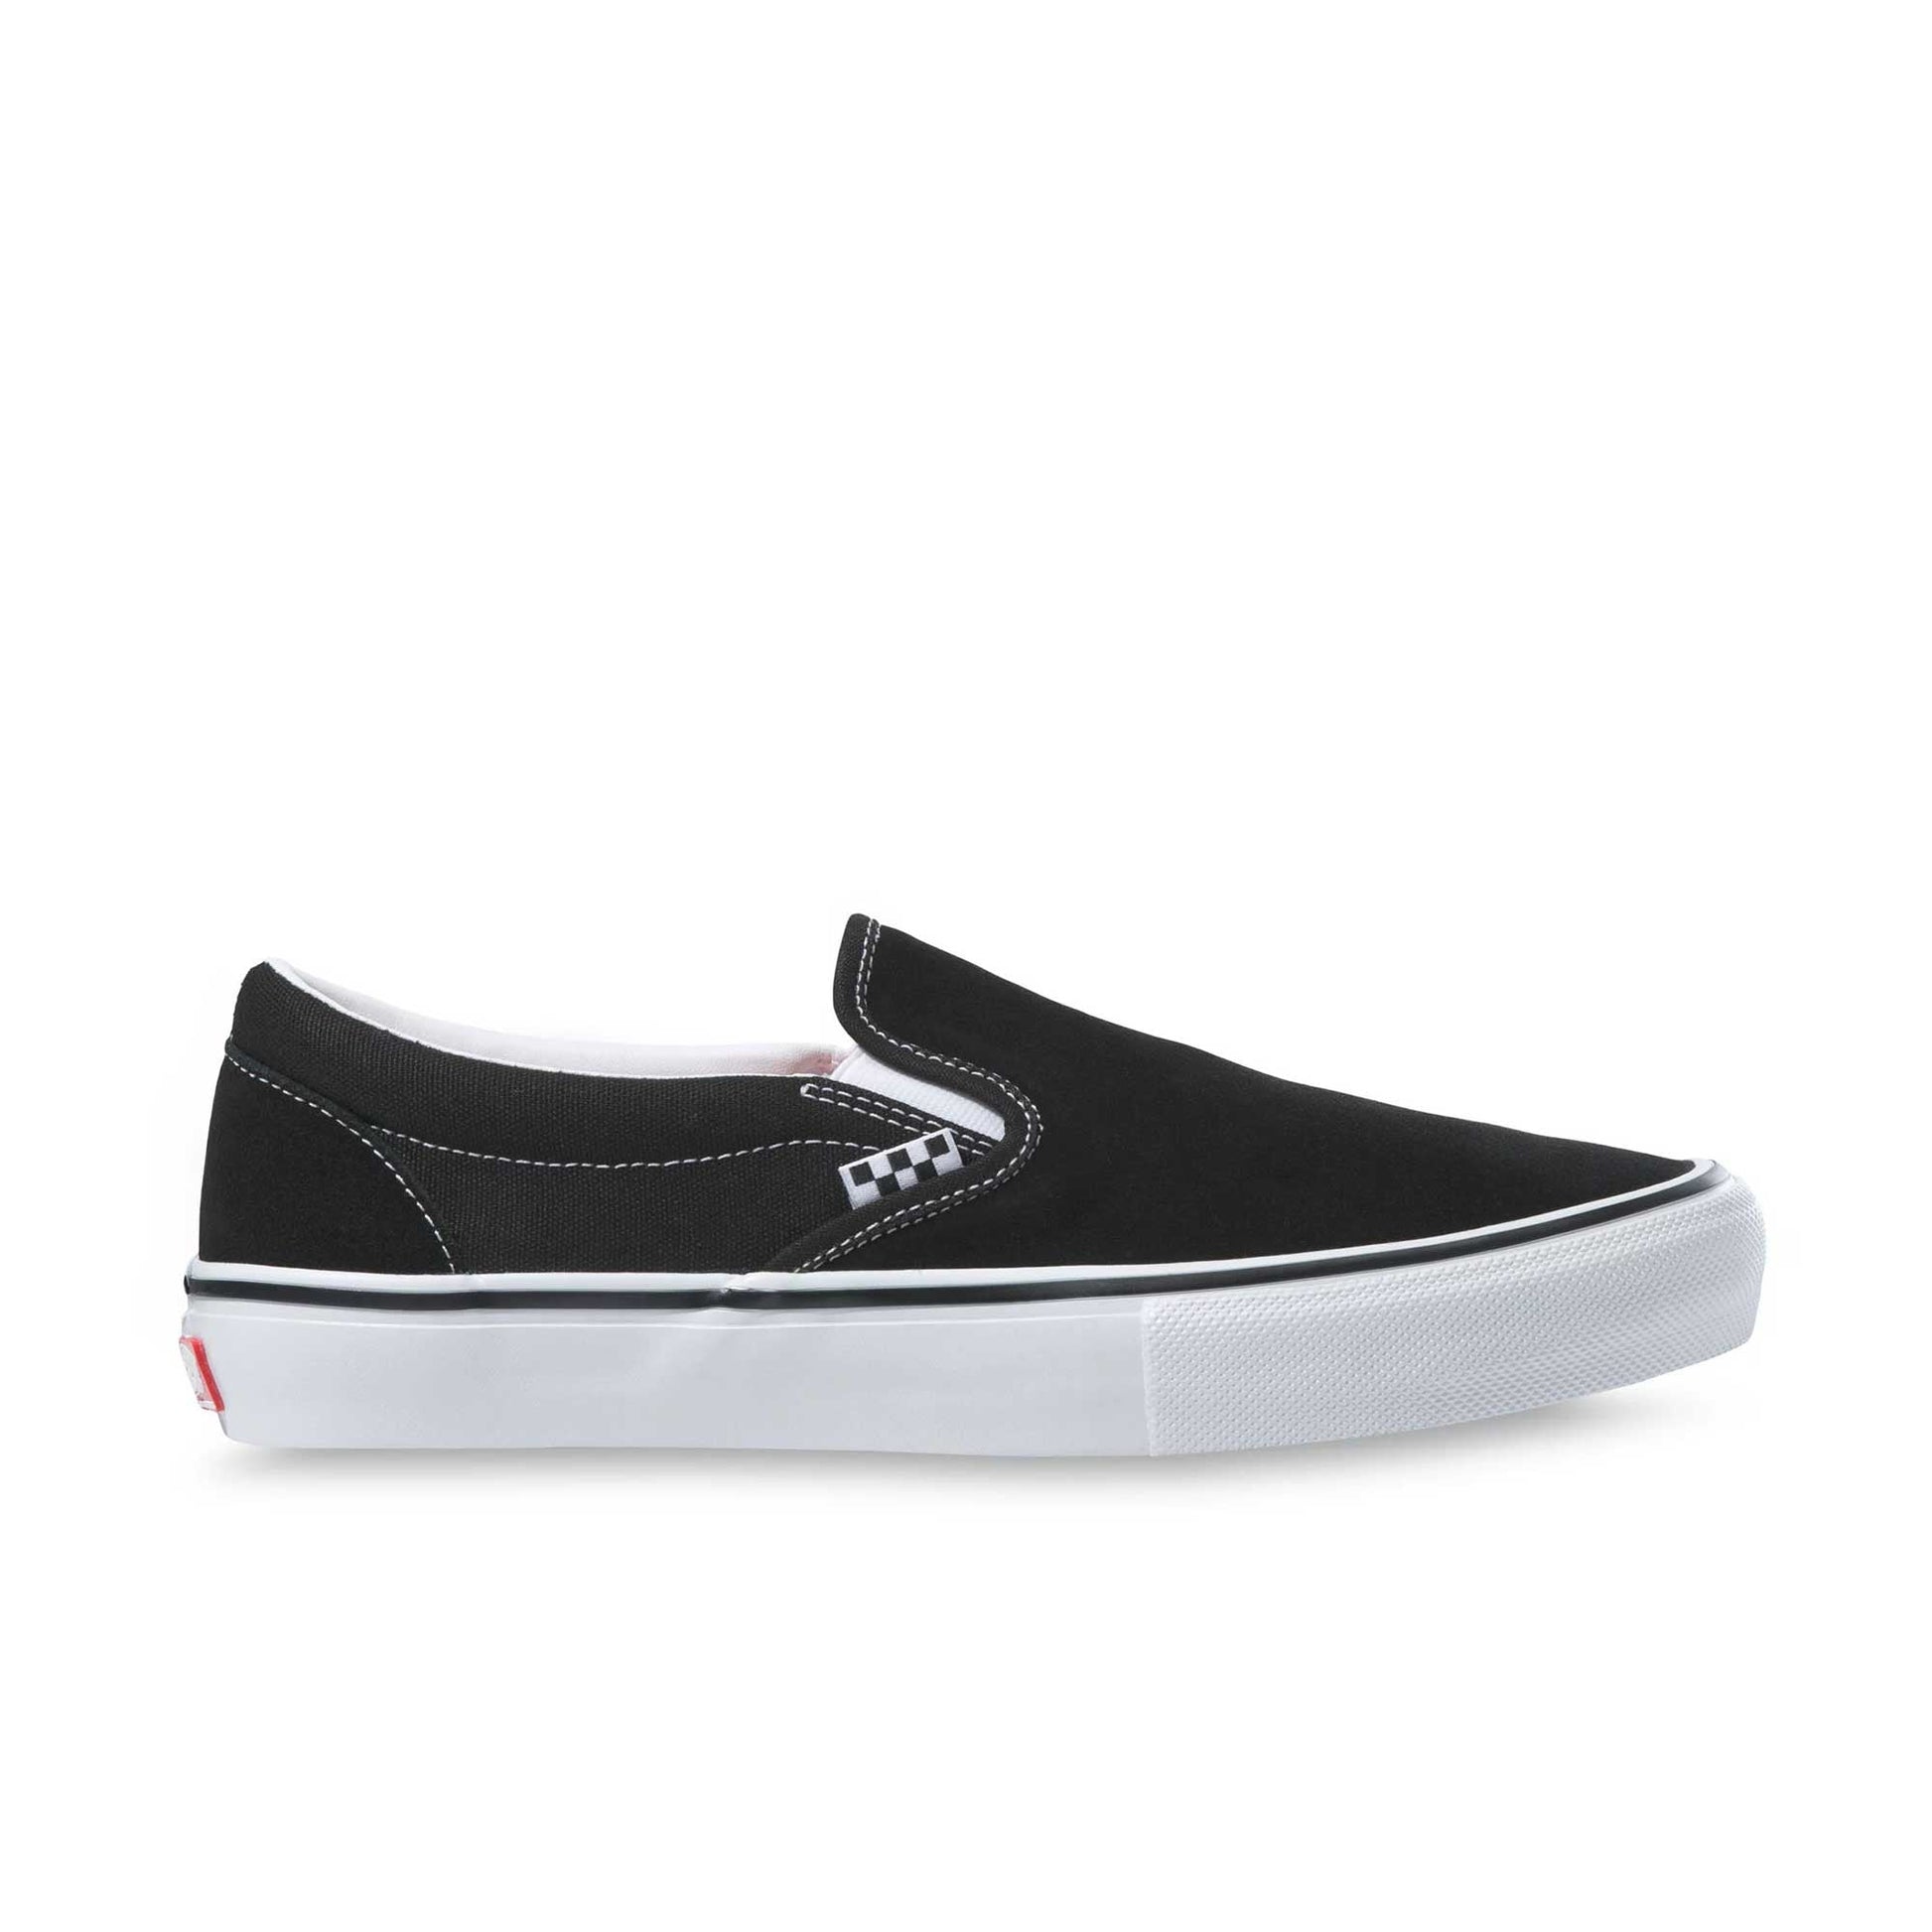 Vans Skate Slip-On, black/white - Tiki Room Skateboards - 1